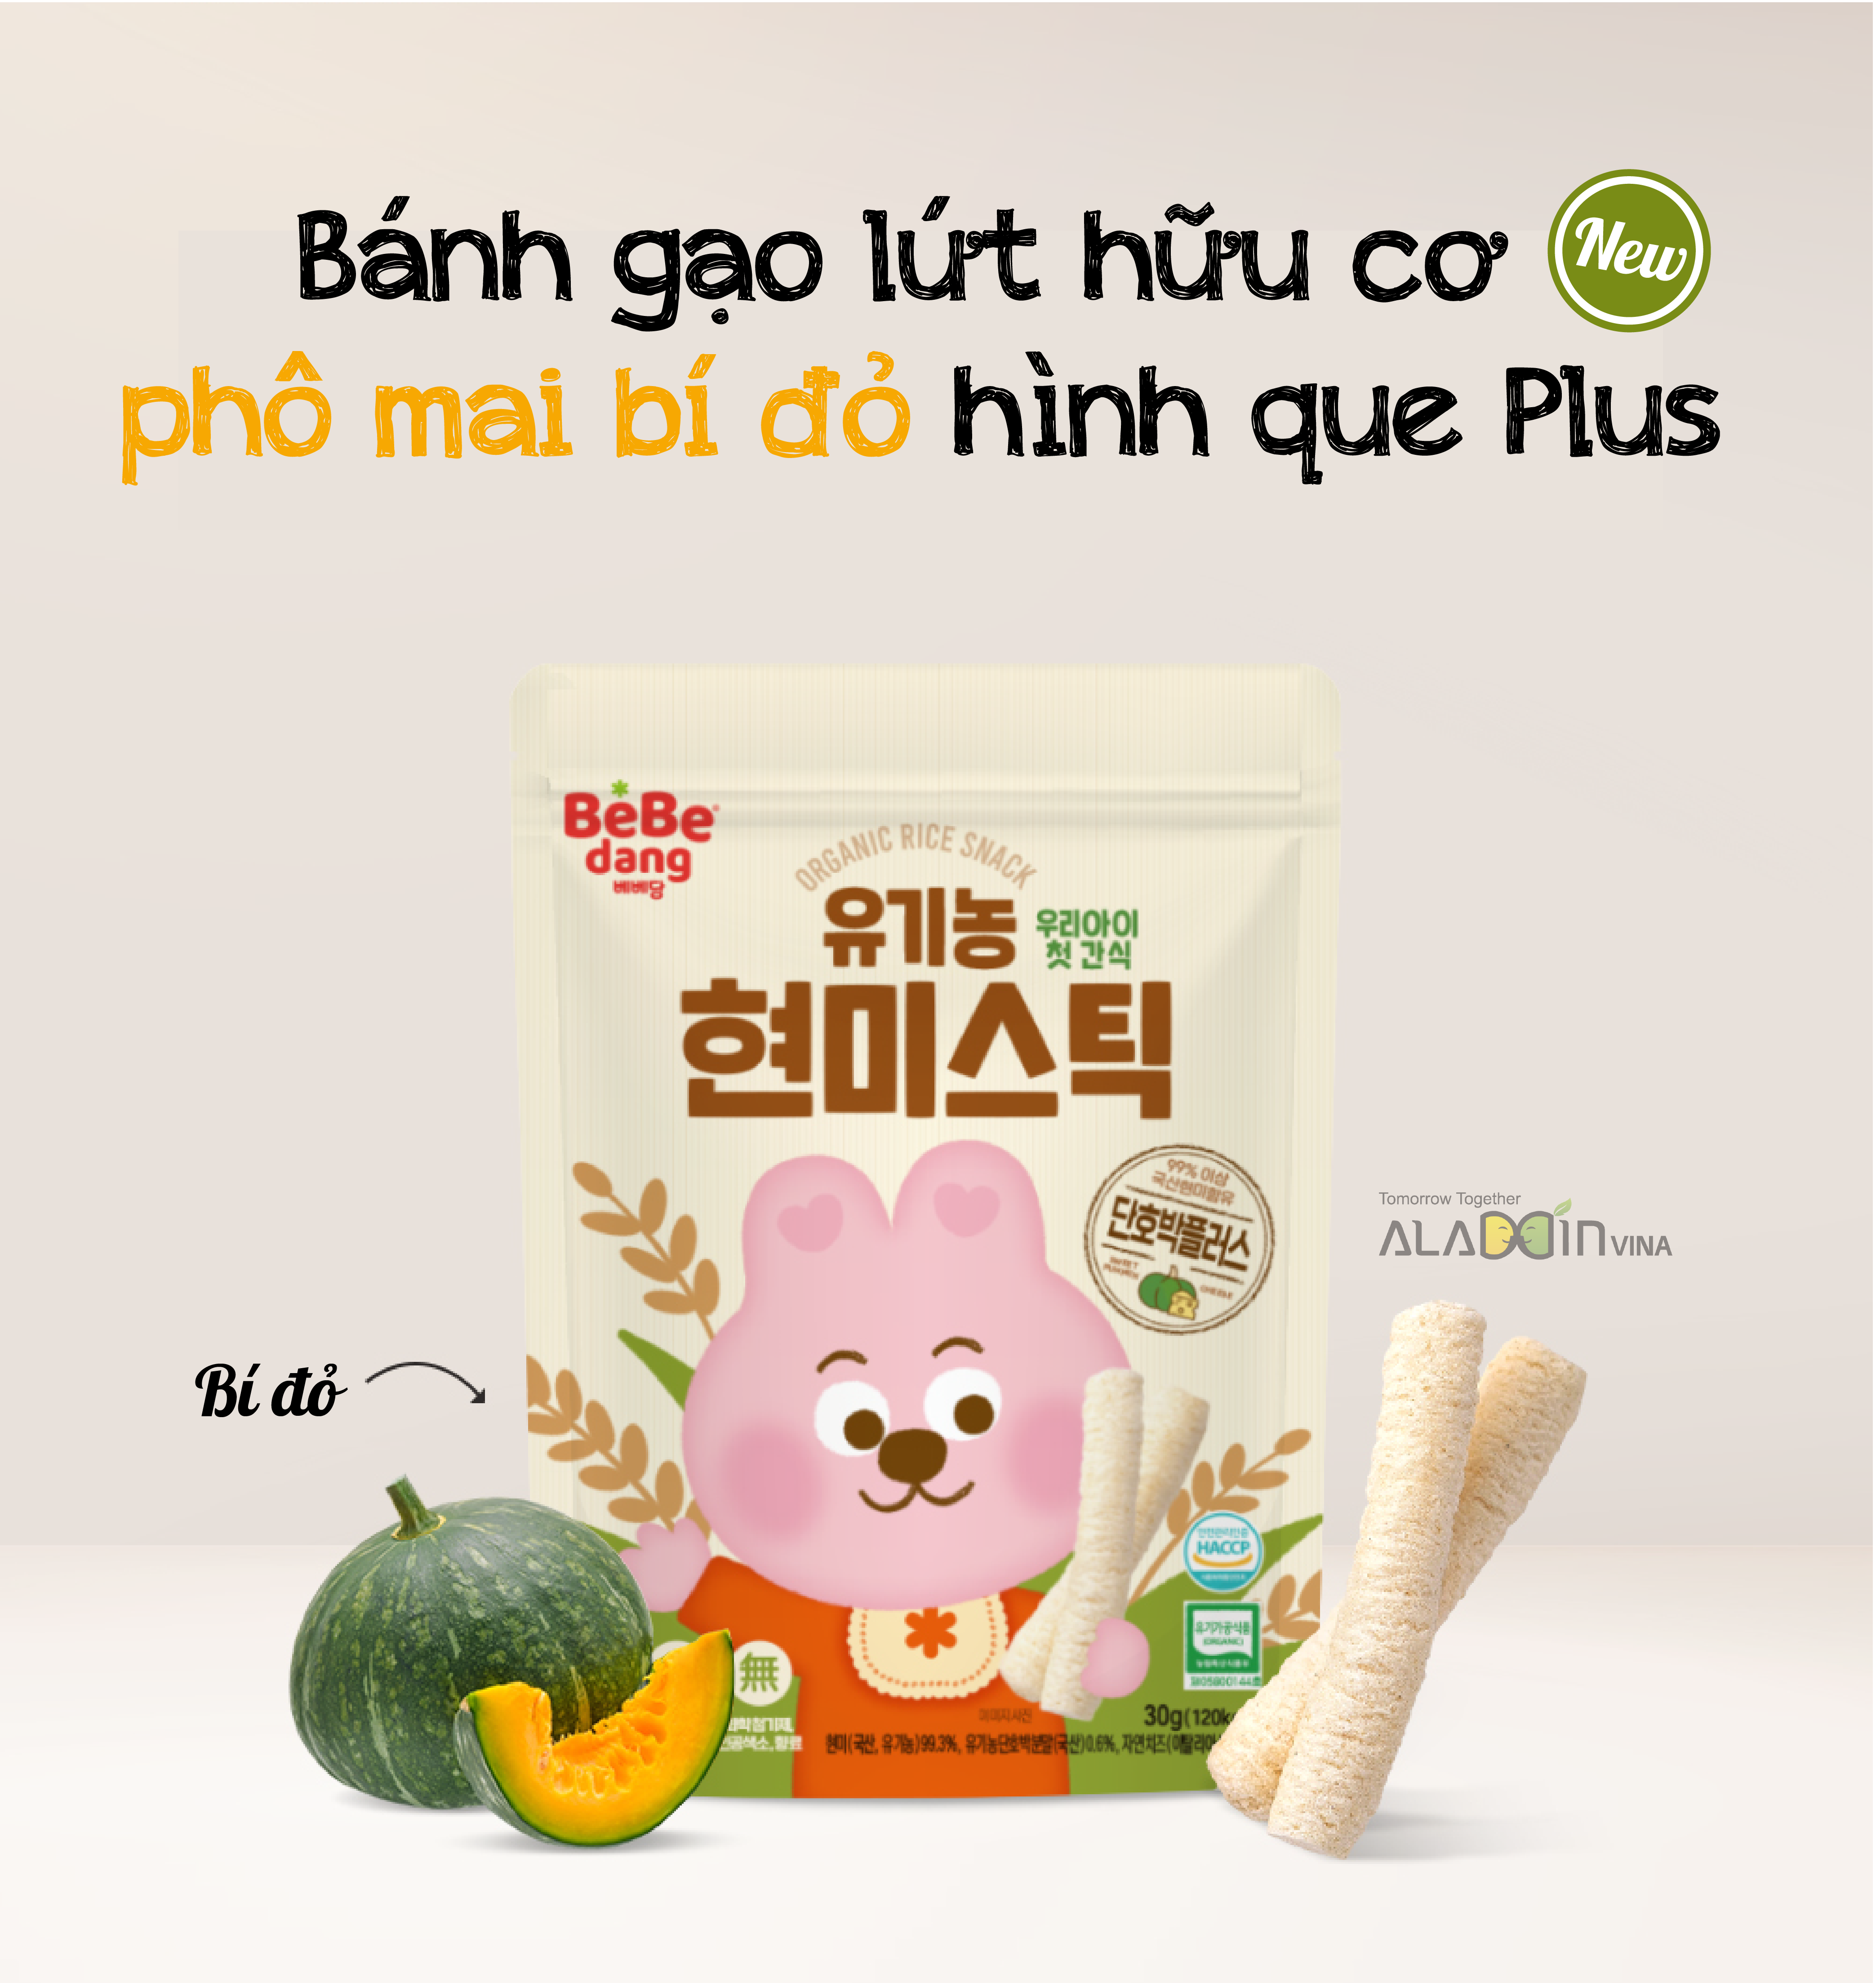 Bánh gạo lứt hữu cơ nhập khẩu Hàn Quốc Bebedang - Phô mai bí đỏ hình que